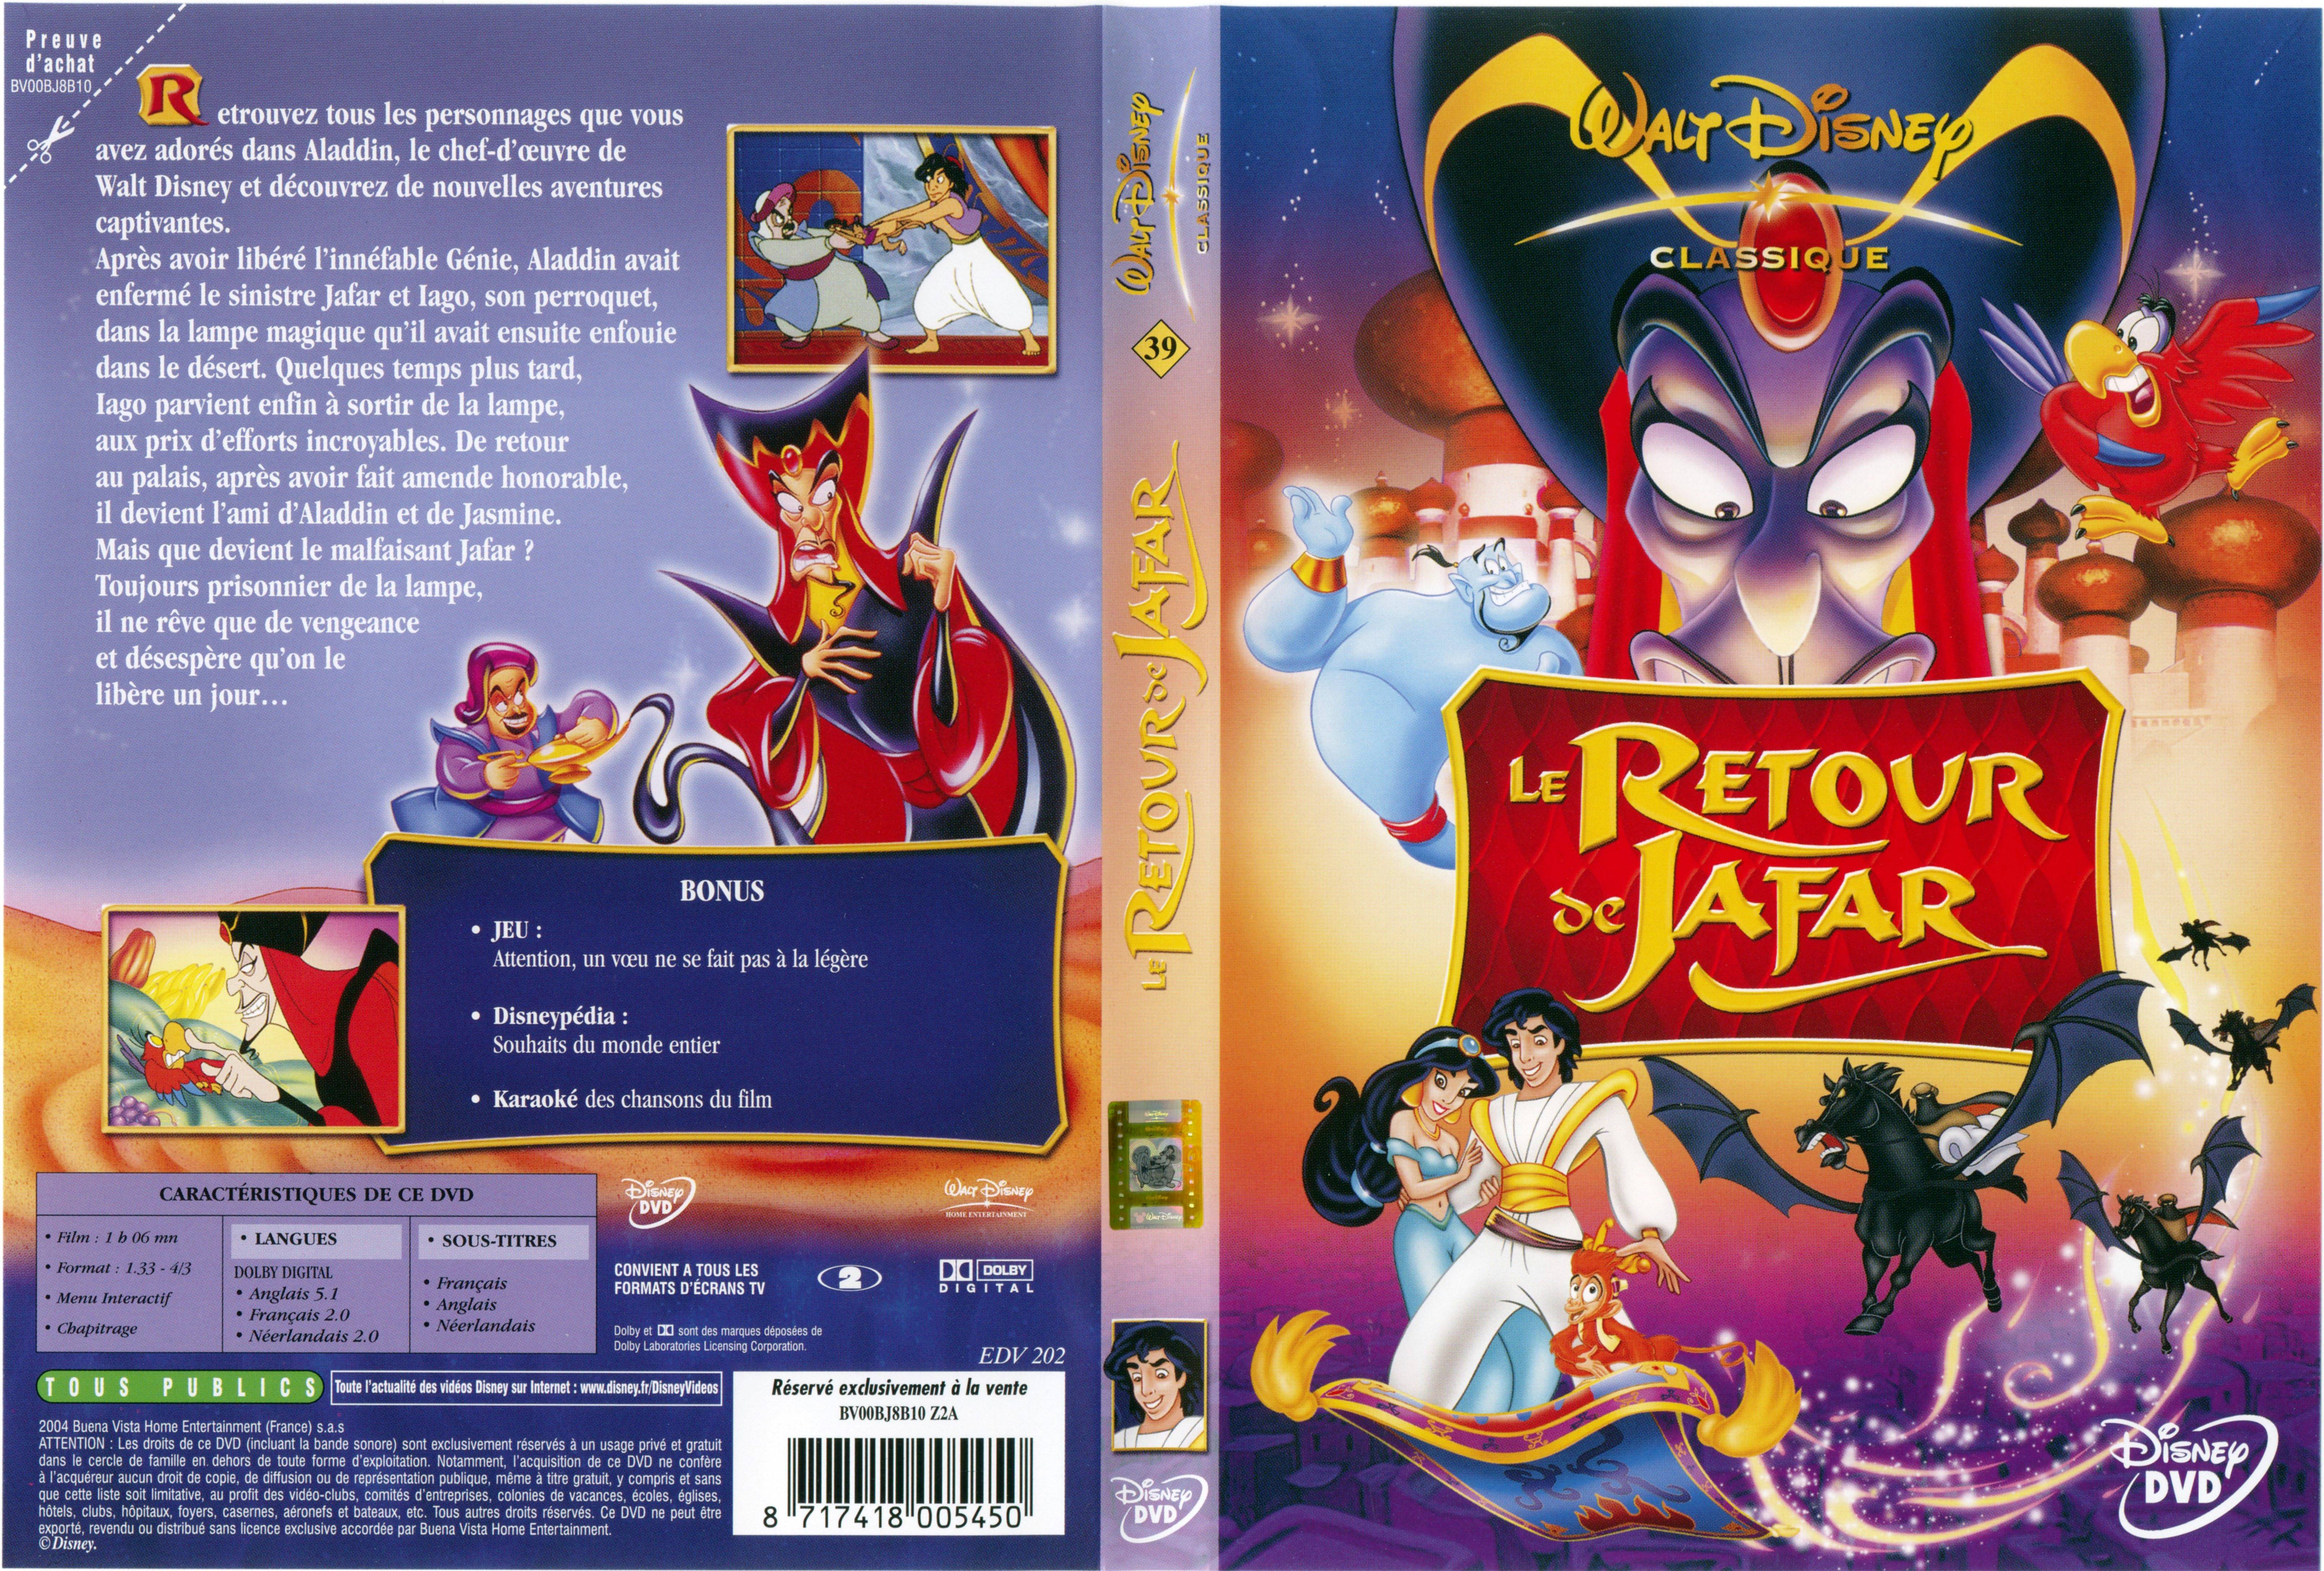 Jaquette DVD Le retour de Jafar